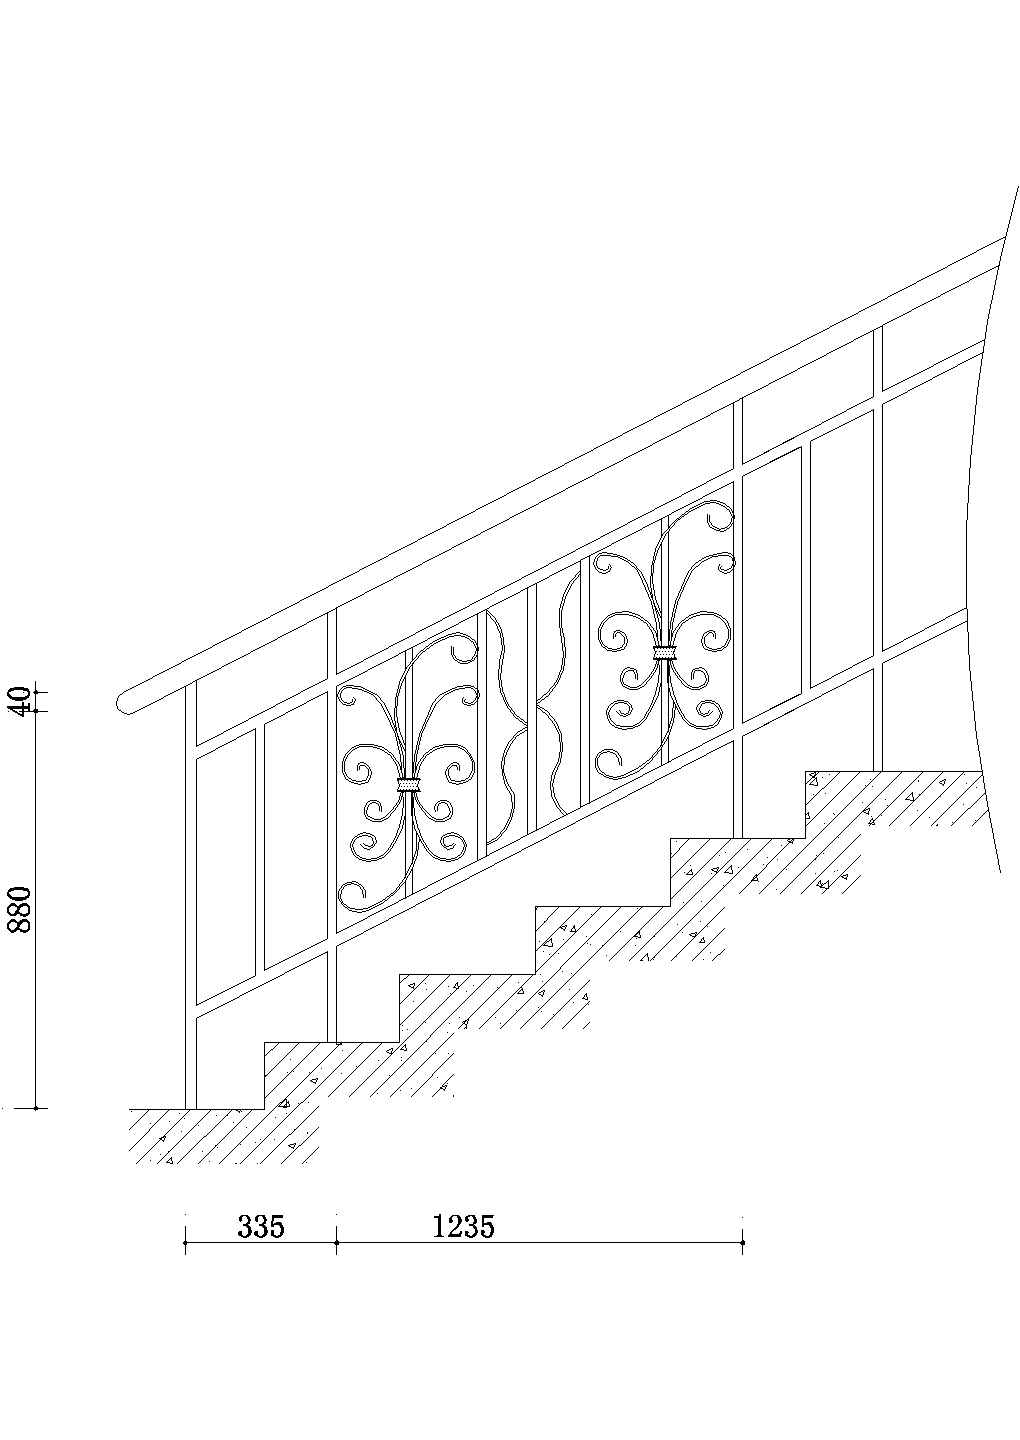 成都青羊区某居住区单元门楼梯栏杆建筑设计CAD施工图